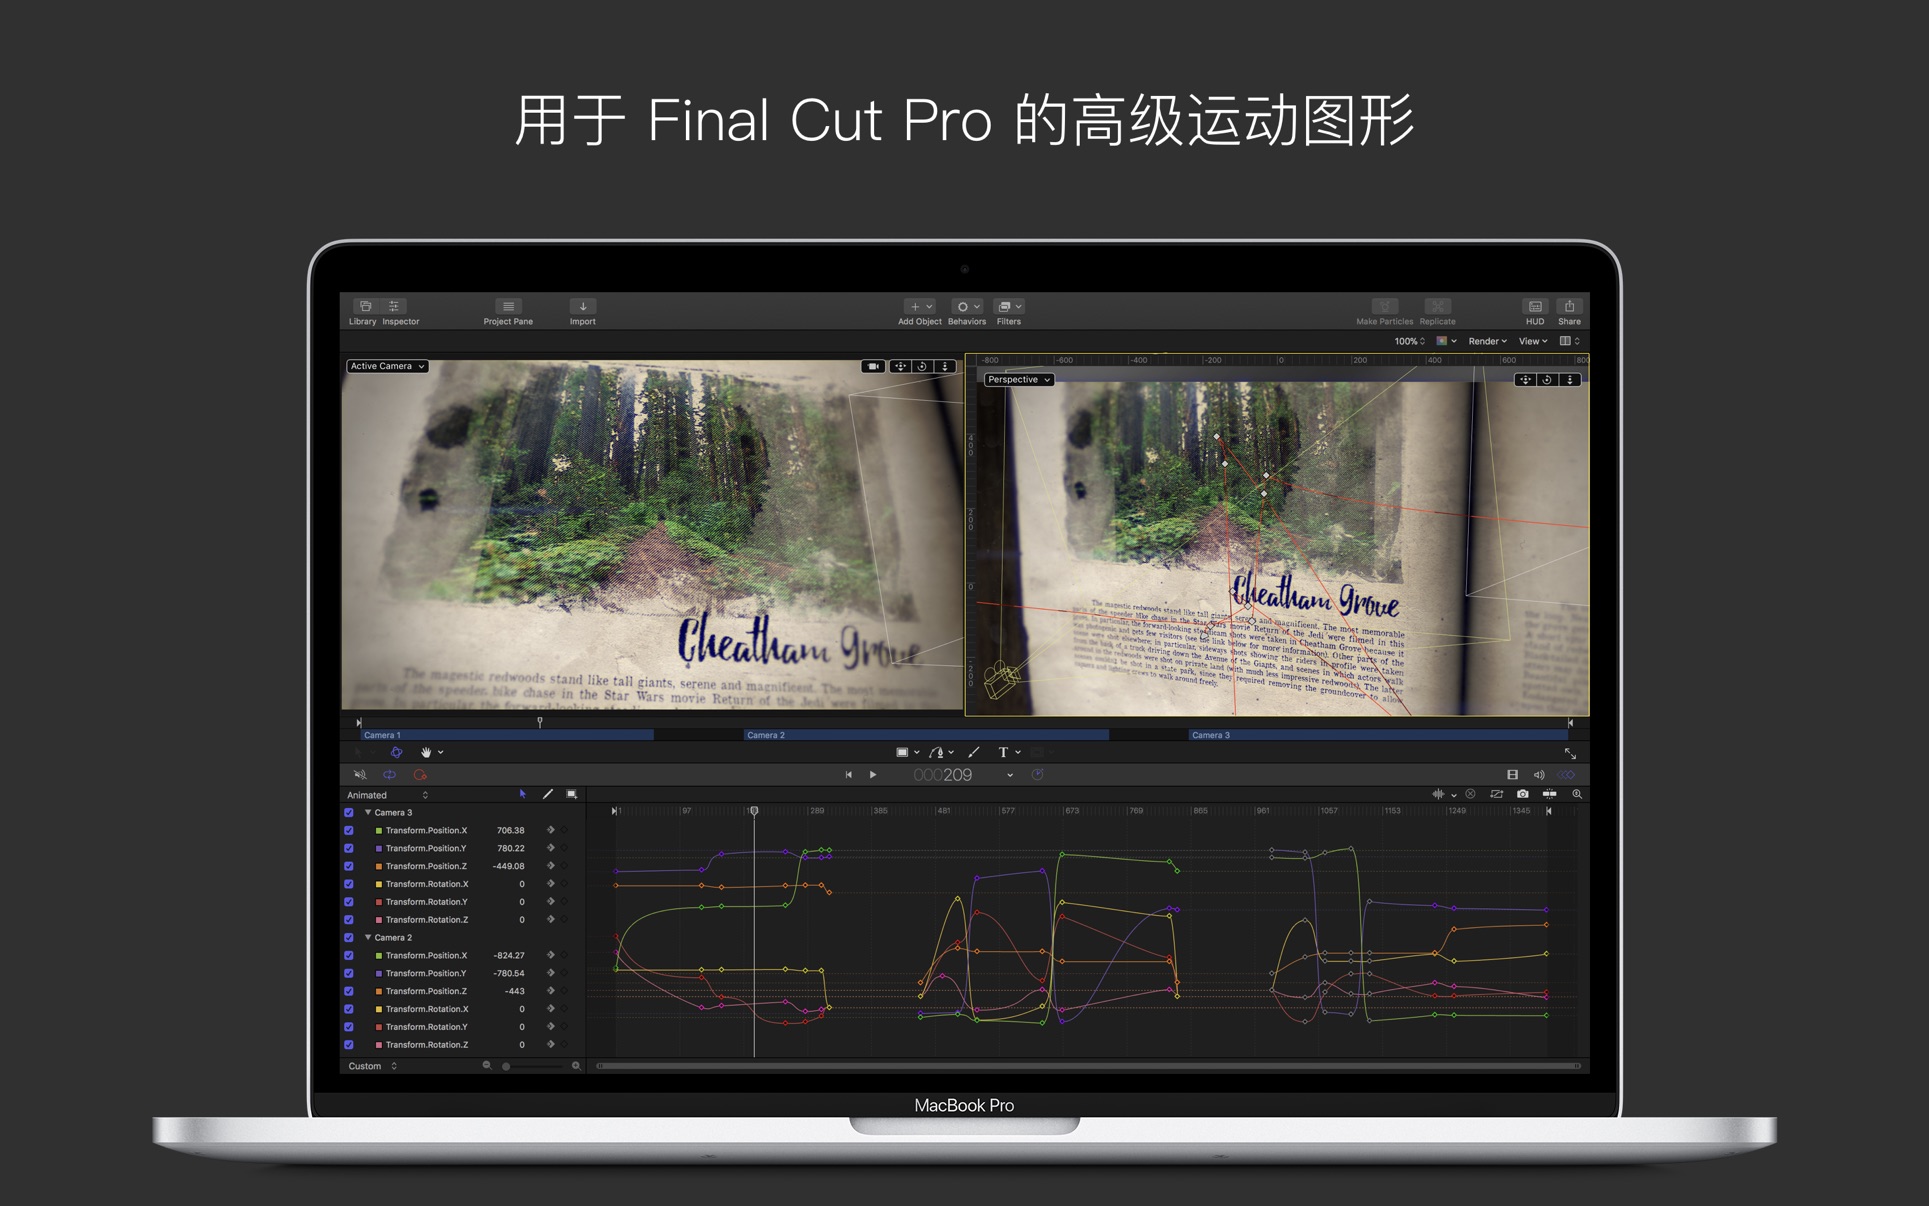 影视编辑 Motion for Mac 5.6.4 中文破解版 FinalCutPro字幕、转场和效果特效软件